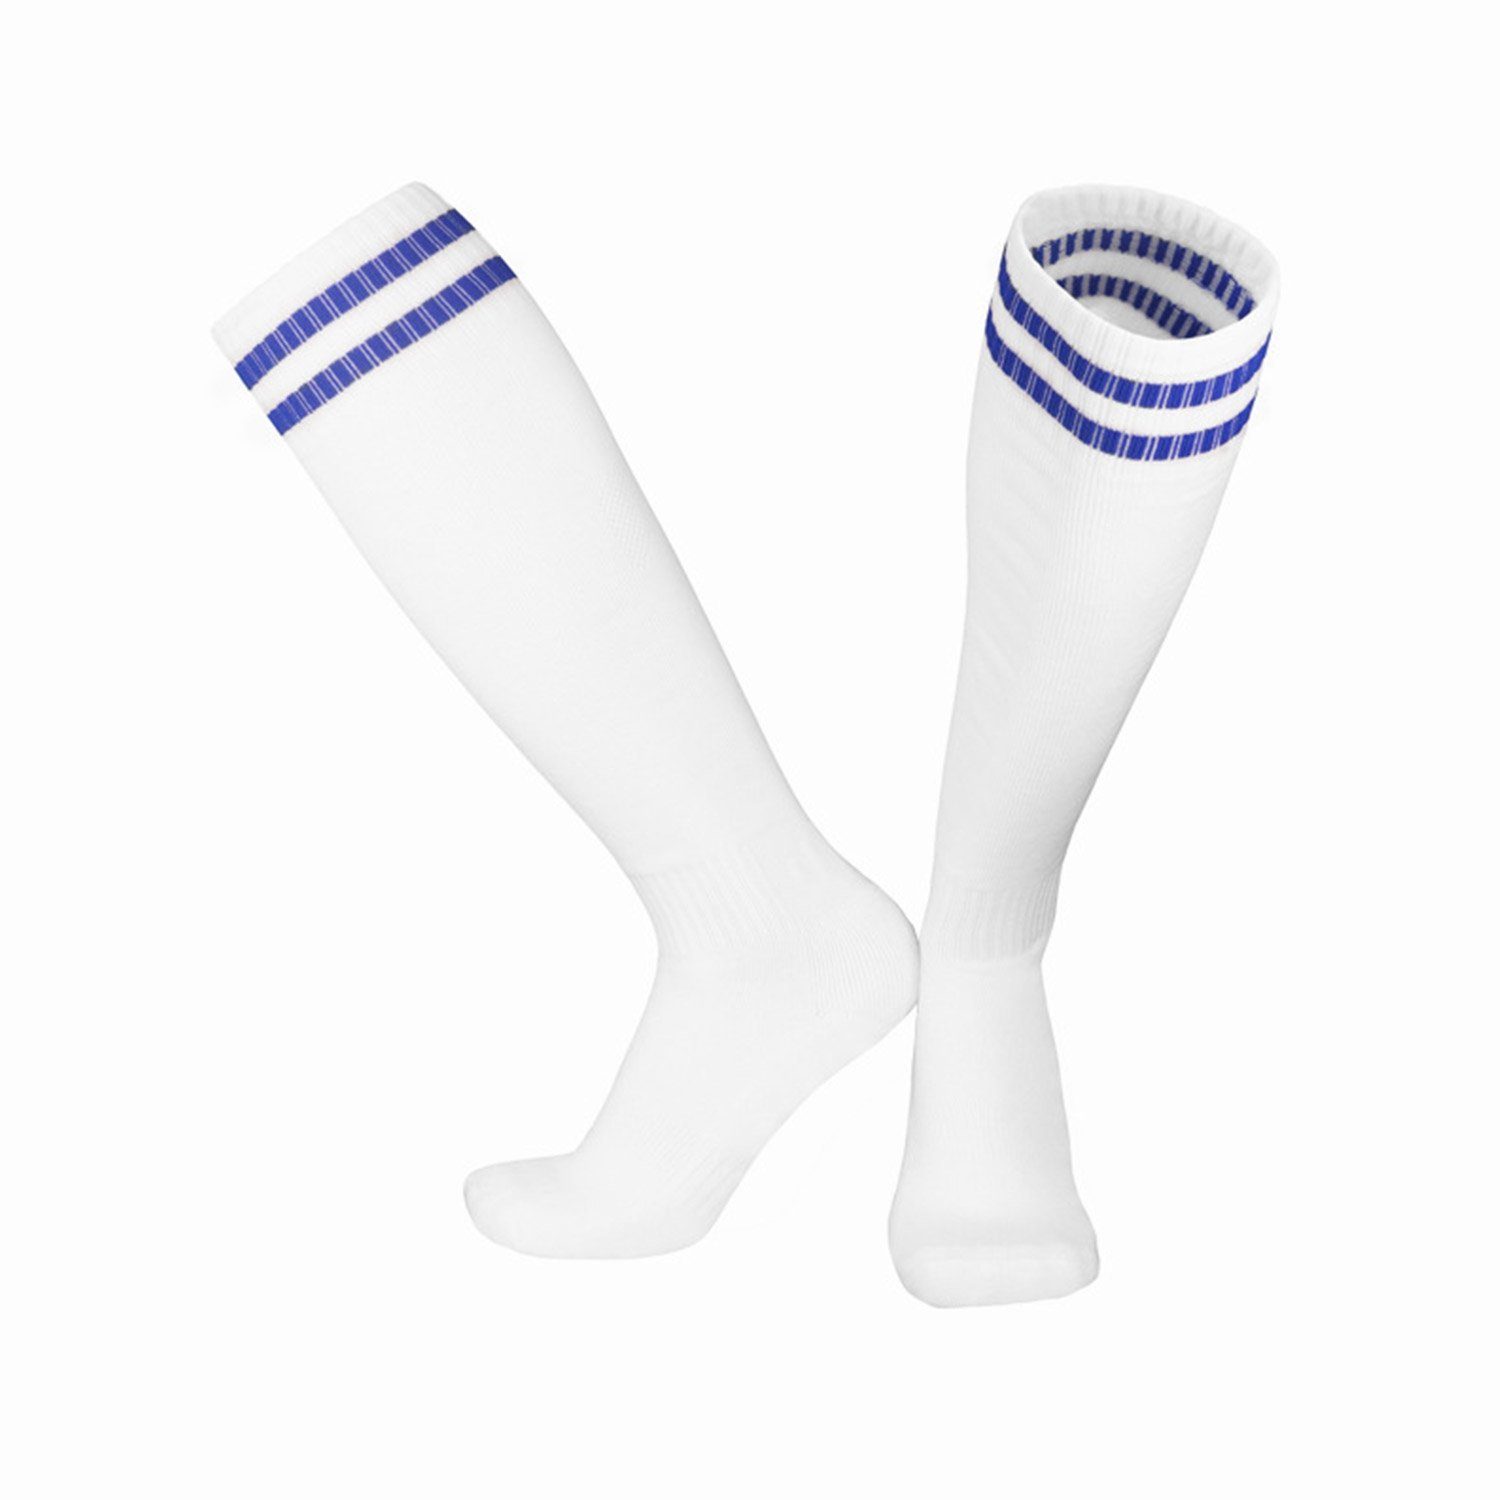 und Erwachsene Sportsocken Socken MAGICSHE Fadenfäden Weiß2 für Laufen Bewegung Neutral Training Kinderfußball Socken Fußballtraining, -Socken